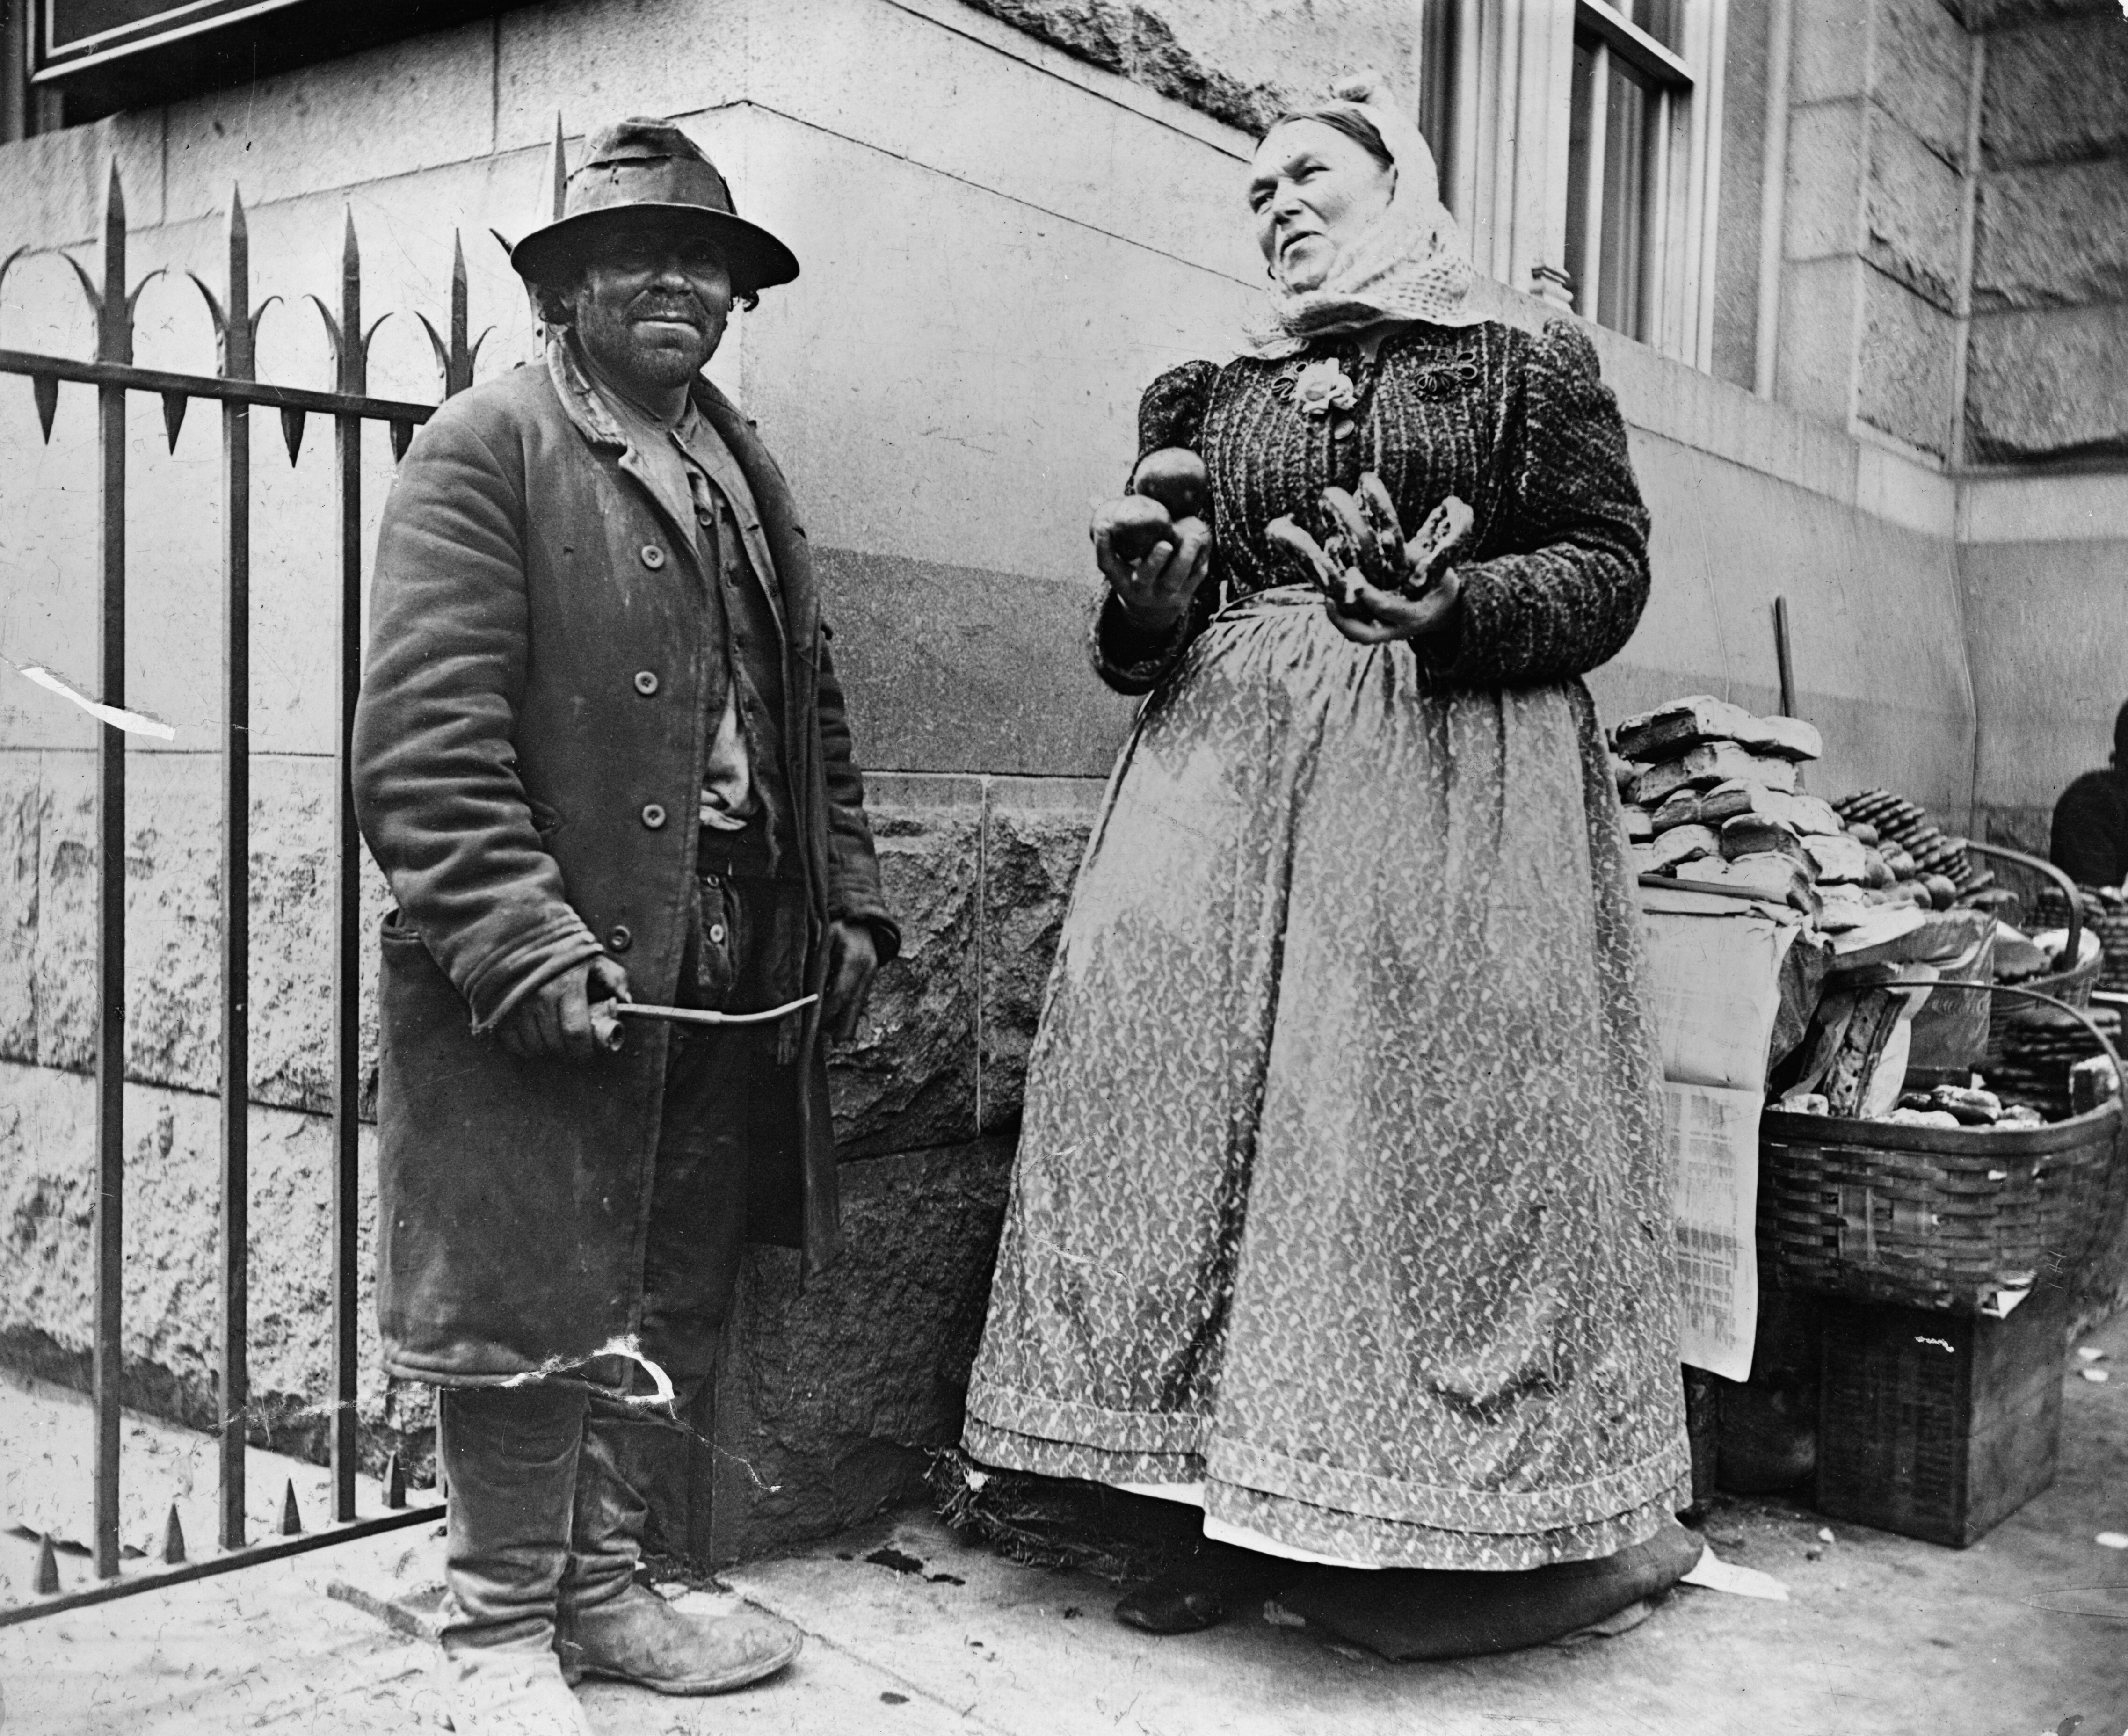 Типы с улиц Нью-Йорка, эмигрант и продавщица кренделей, ок. 1896. Фотограф Алиса Остин